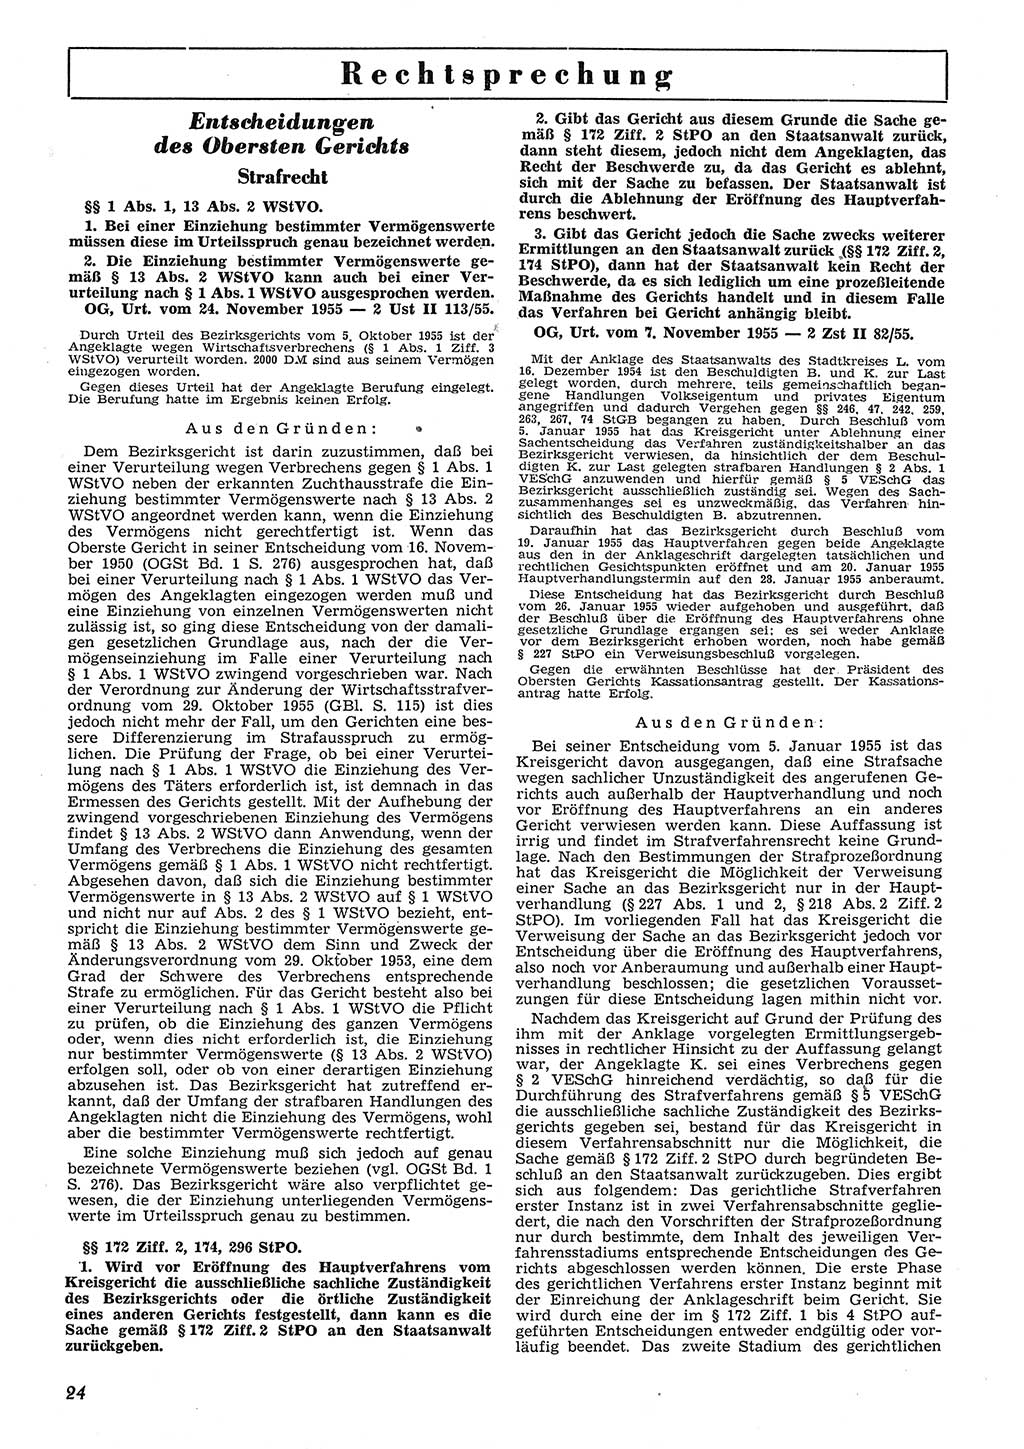 Neue Justiz (NJ), Zeitschrift für Recht und Rechtswissenschaft [Deutsche Demokratische Republik (DDR)], 10. Jahrgang 1956, Seite 24 (NJ DDR 1956, S. 24)